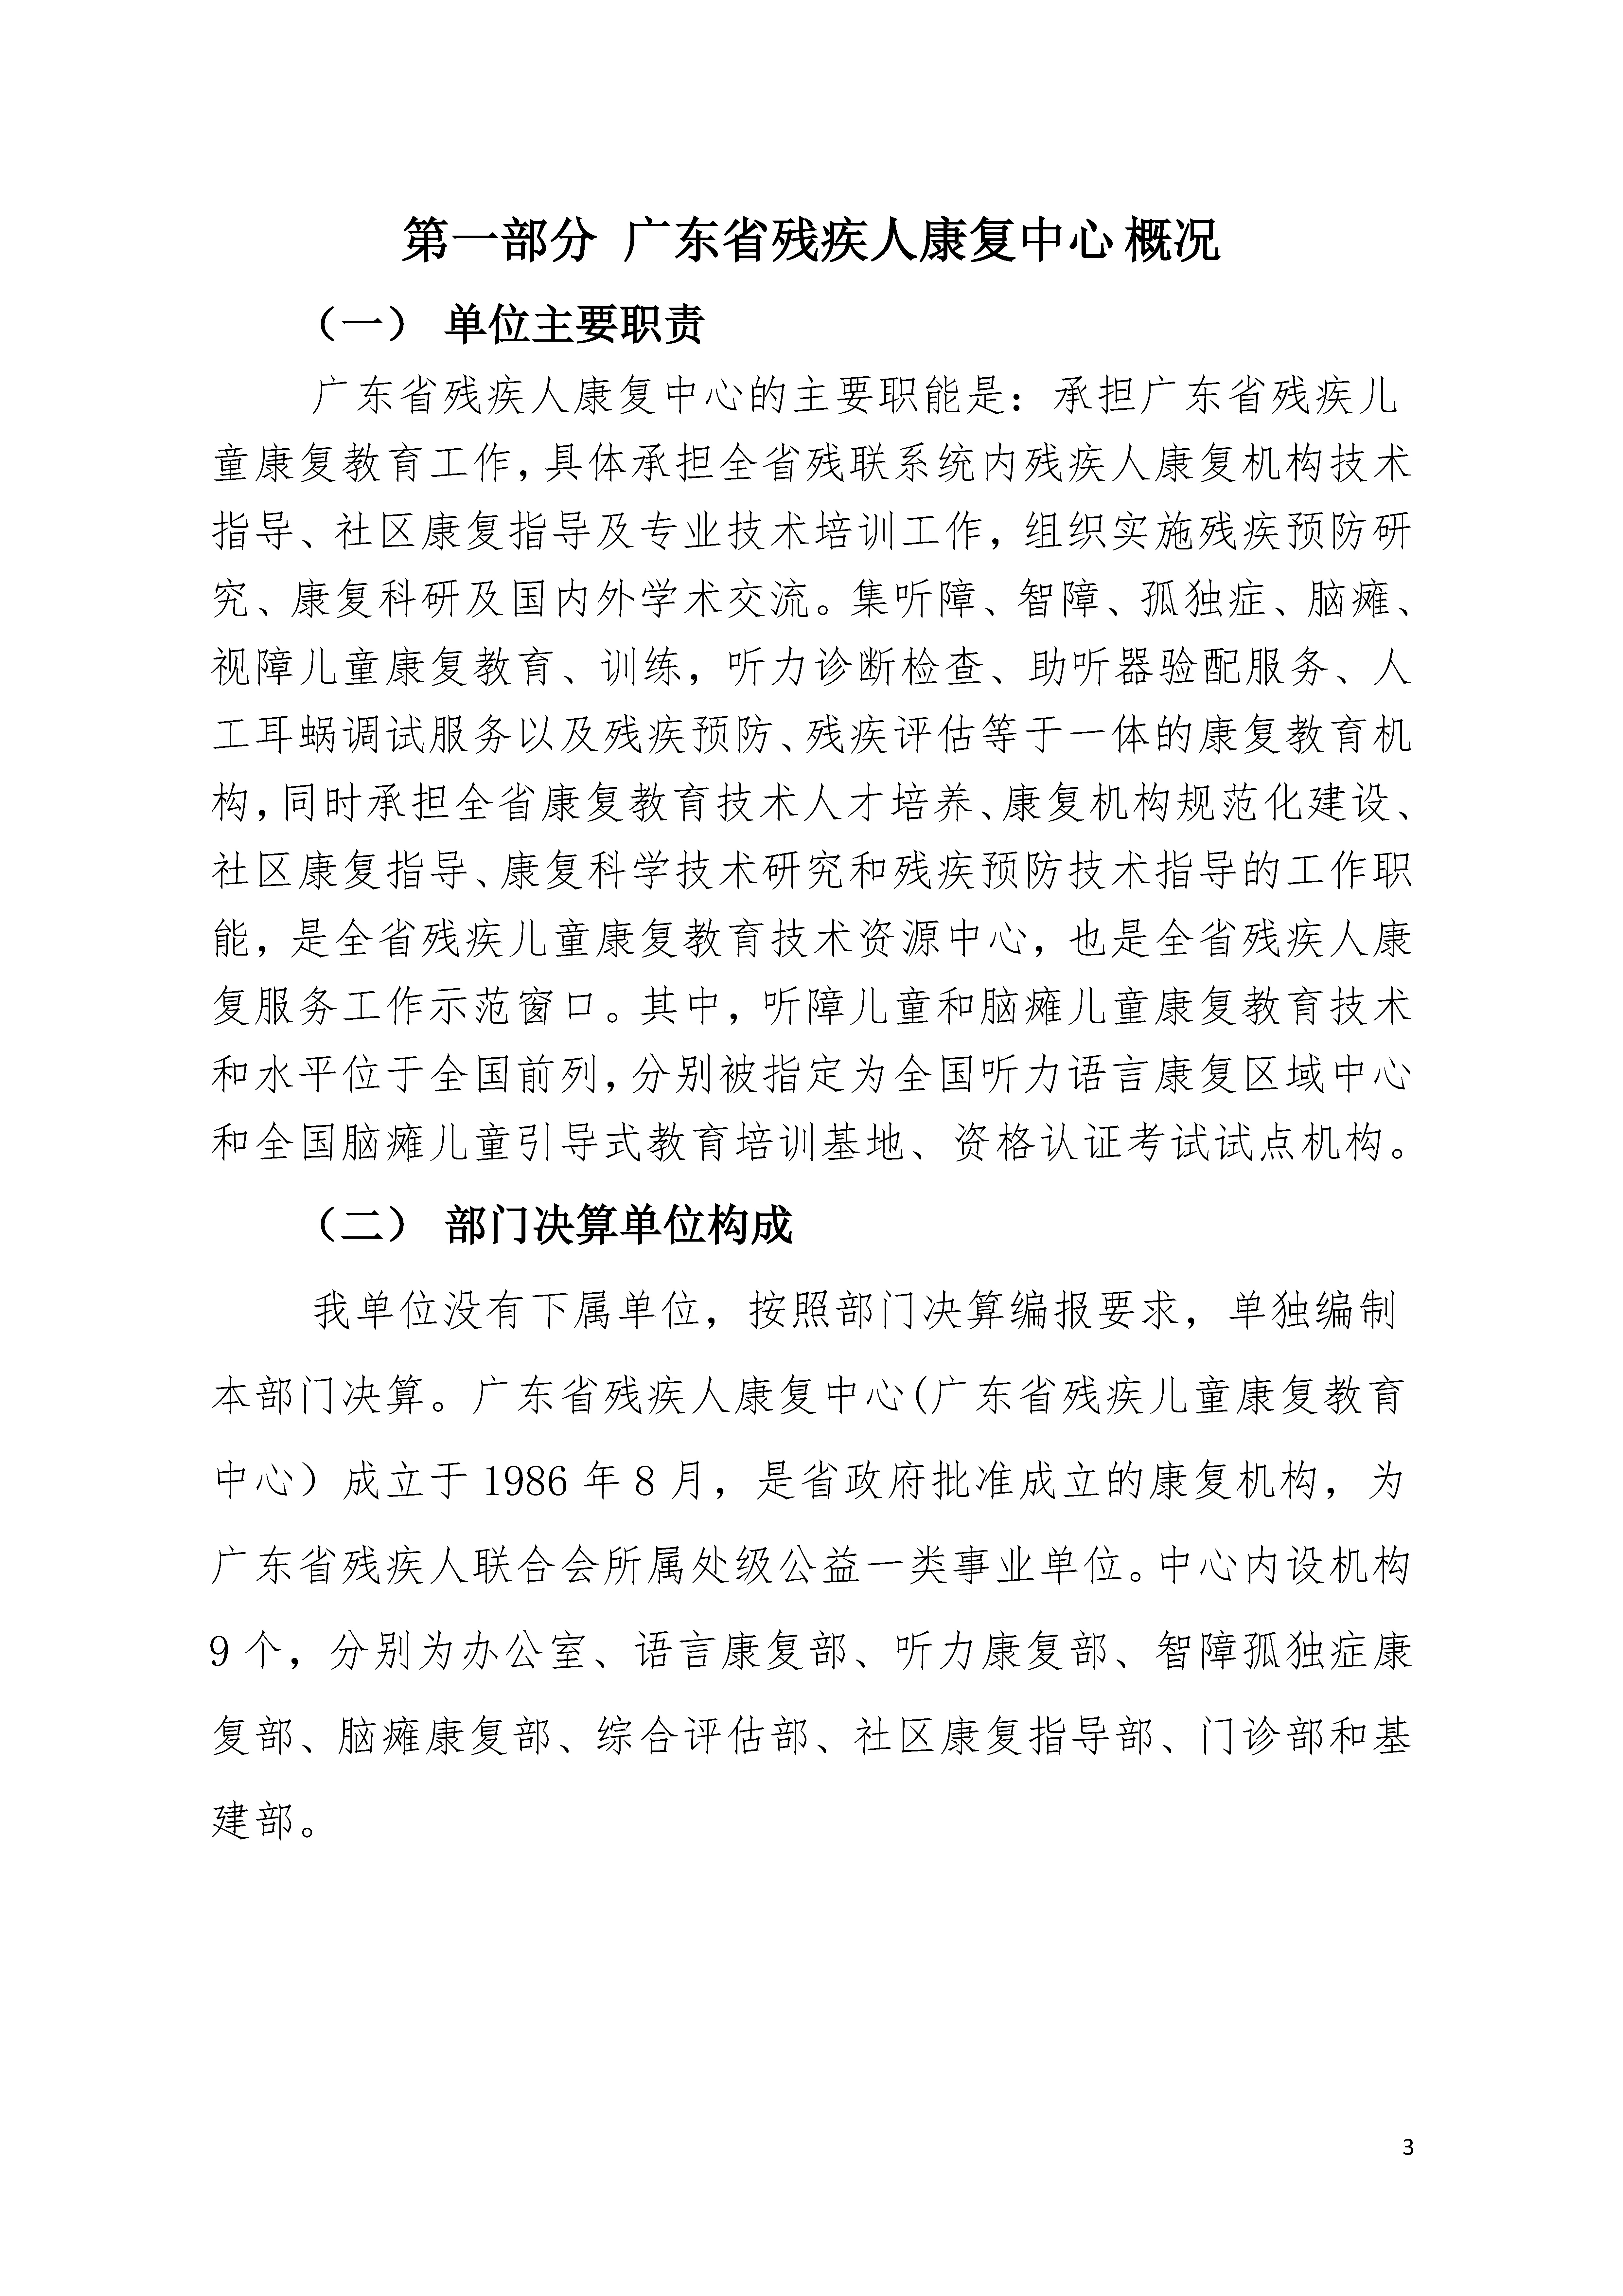 2020年广东省残疾人康复中心部门决算_页面_03.jpg